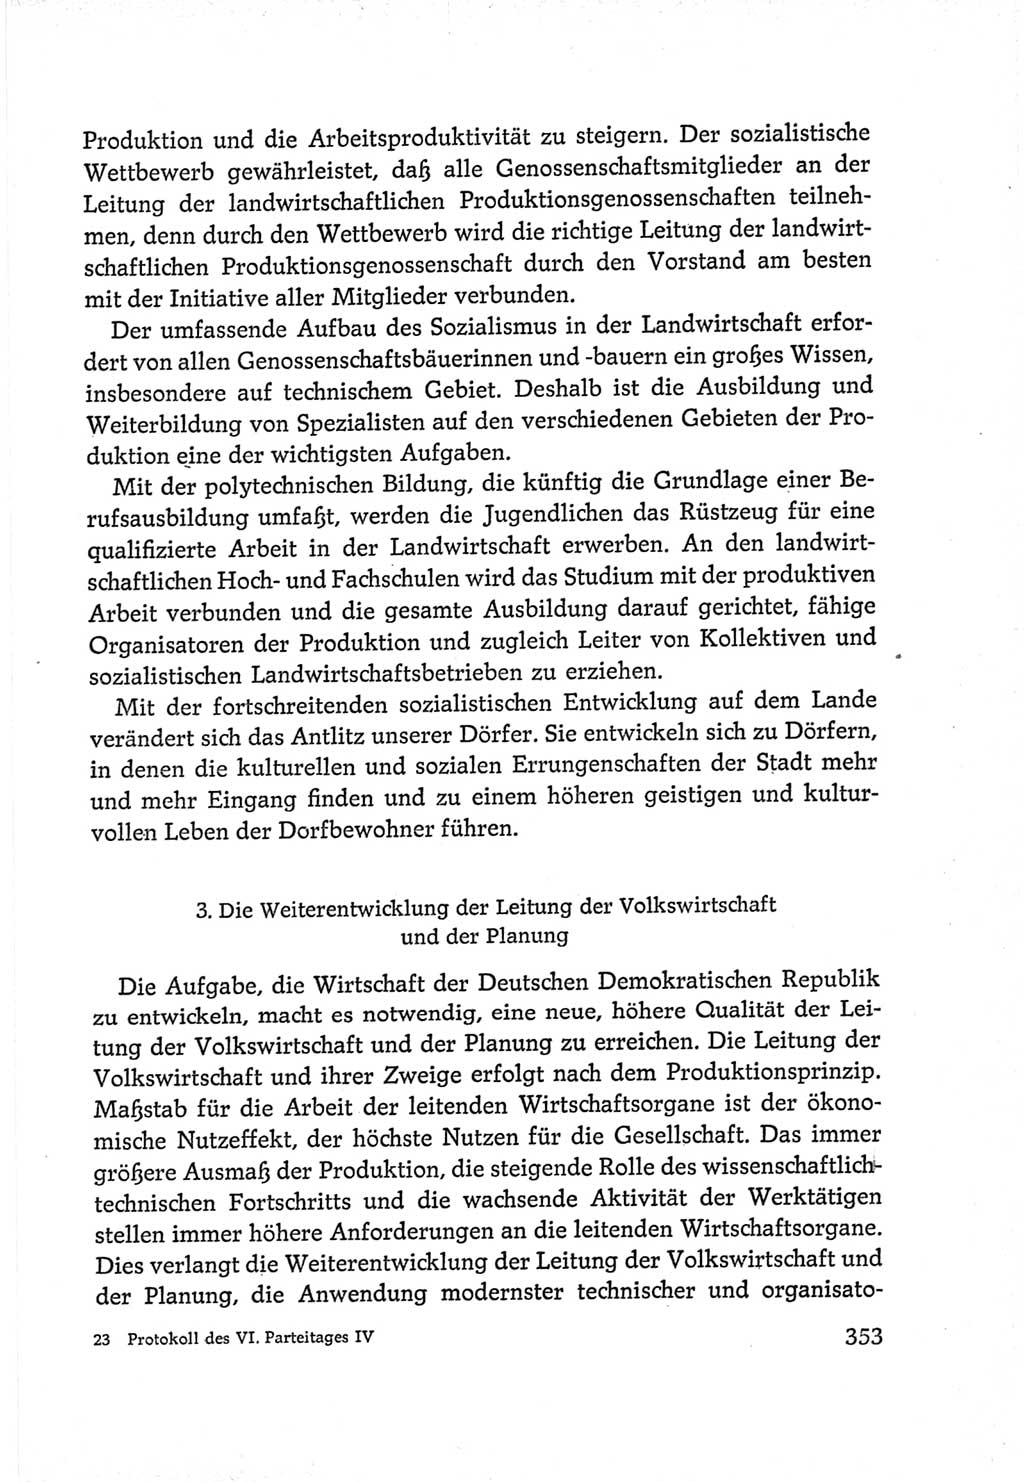 Protokoll der Verhandlungen des Ⅵ. Parteitages der Sozialistischen Einheitspartei Deutschlands (SED) [Deutsche Demokratische Republik (DDR)] 1963, Band Ⅳ, Seite 353 (Prot. Verh. Ⅵ. PT SED DDR 1963, Bd. Ⅳ, S. 353)